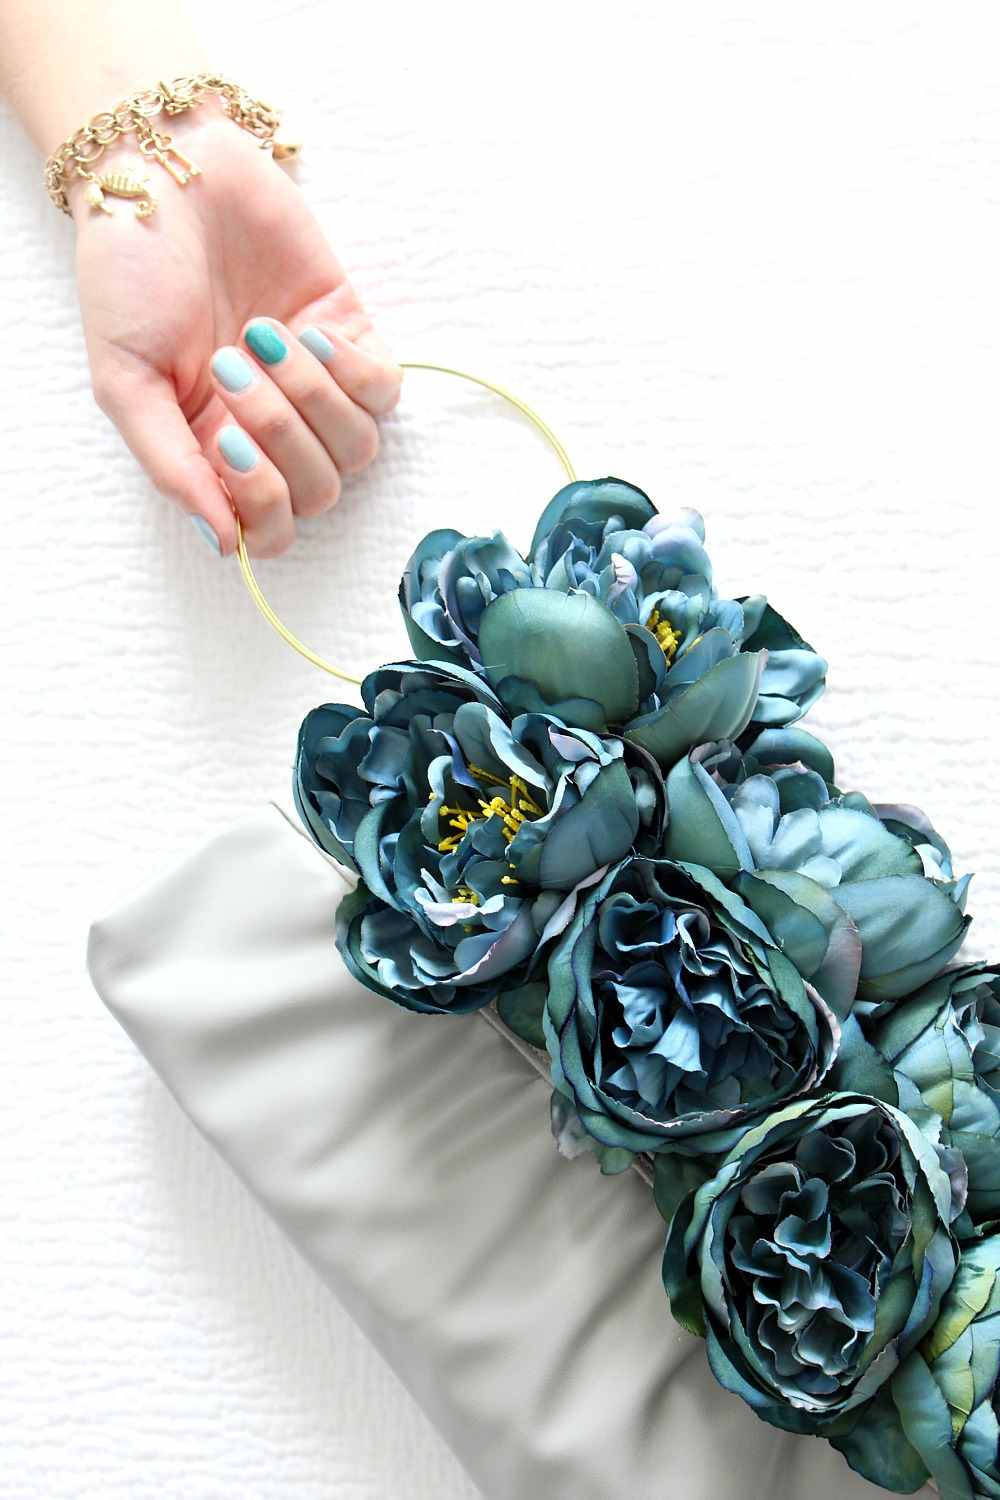 Handtasche aufpeppen Kunstblumen Deko Ideen Upcycling Bracelet Handbags